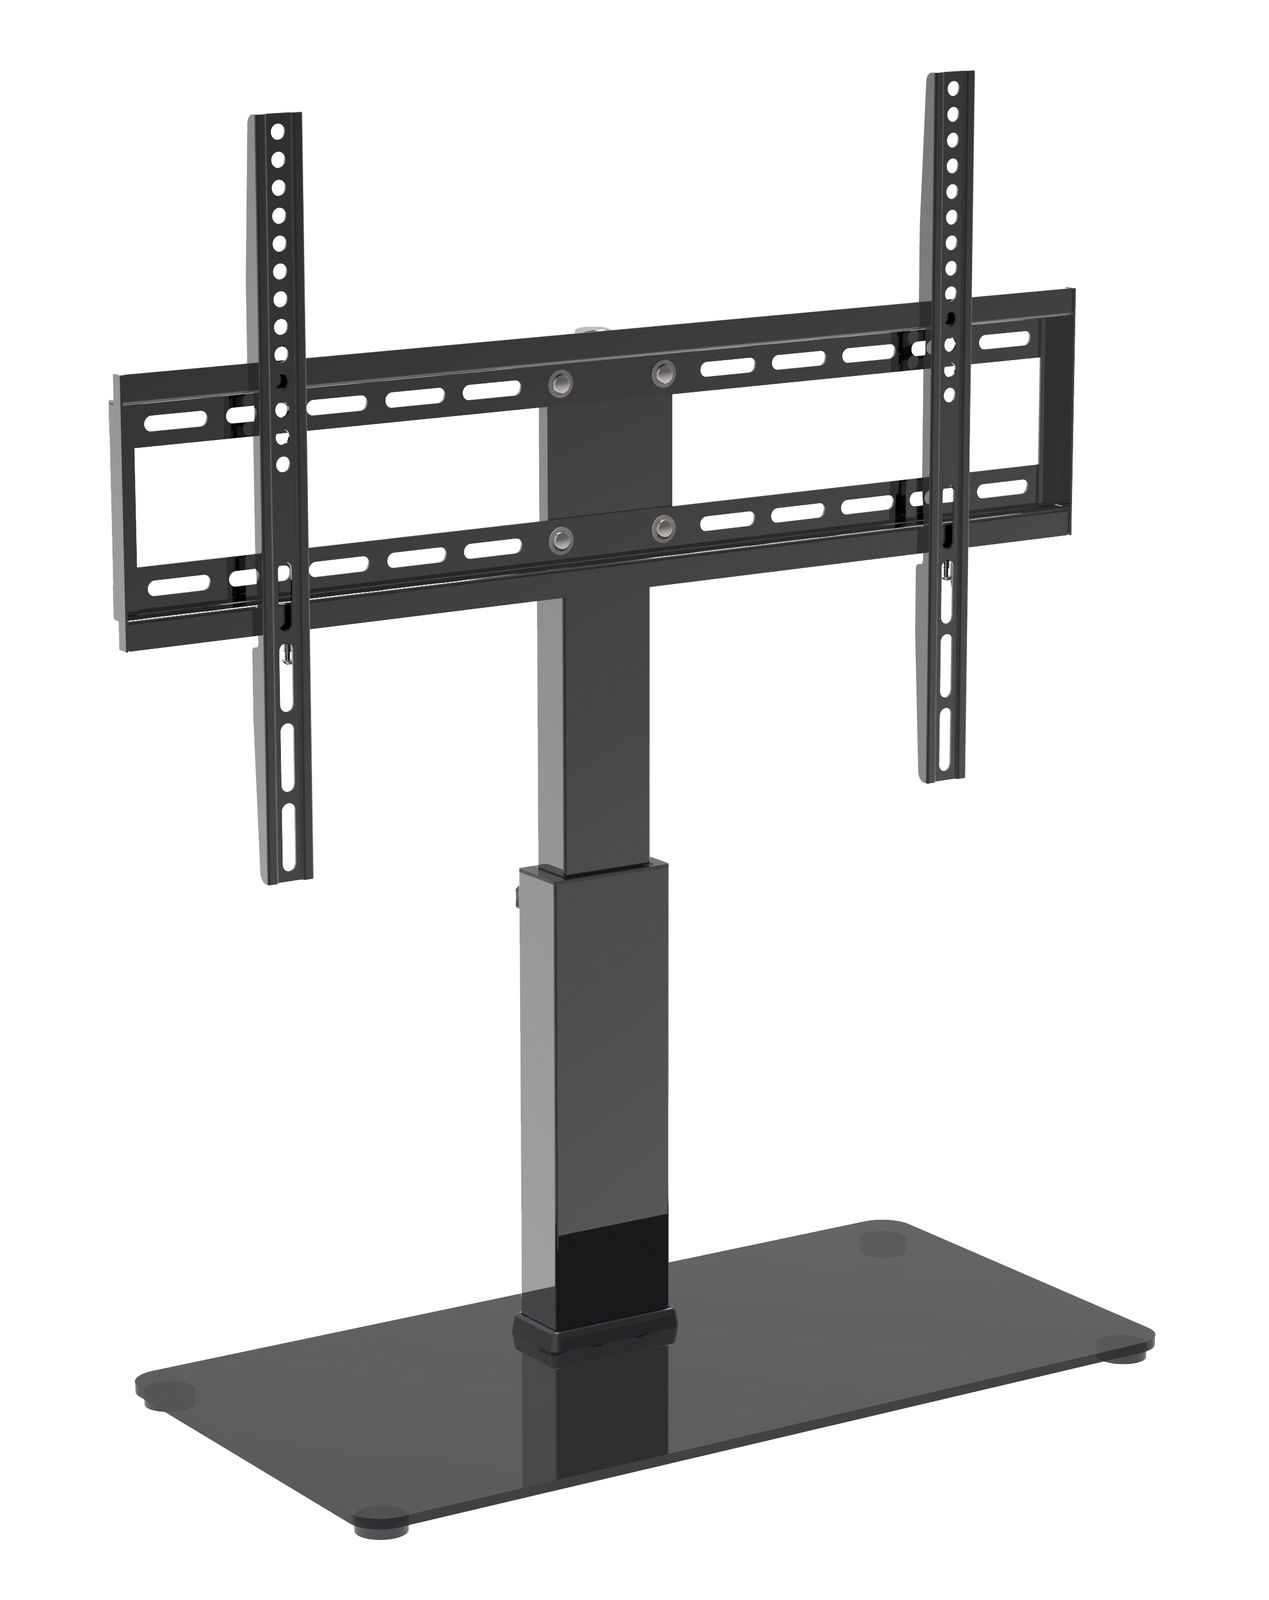 Standfuß für LCD TV Bildschirm-Drehfunktion MyWall HP2BR für Bildschirme 32''-65" (81-165 cm),Belastung bis 40 kg schwarz mit Drehfunktion